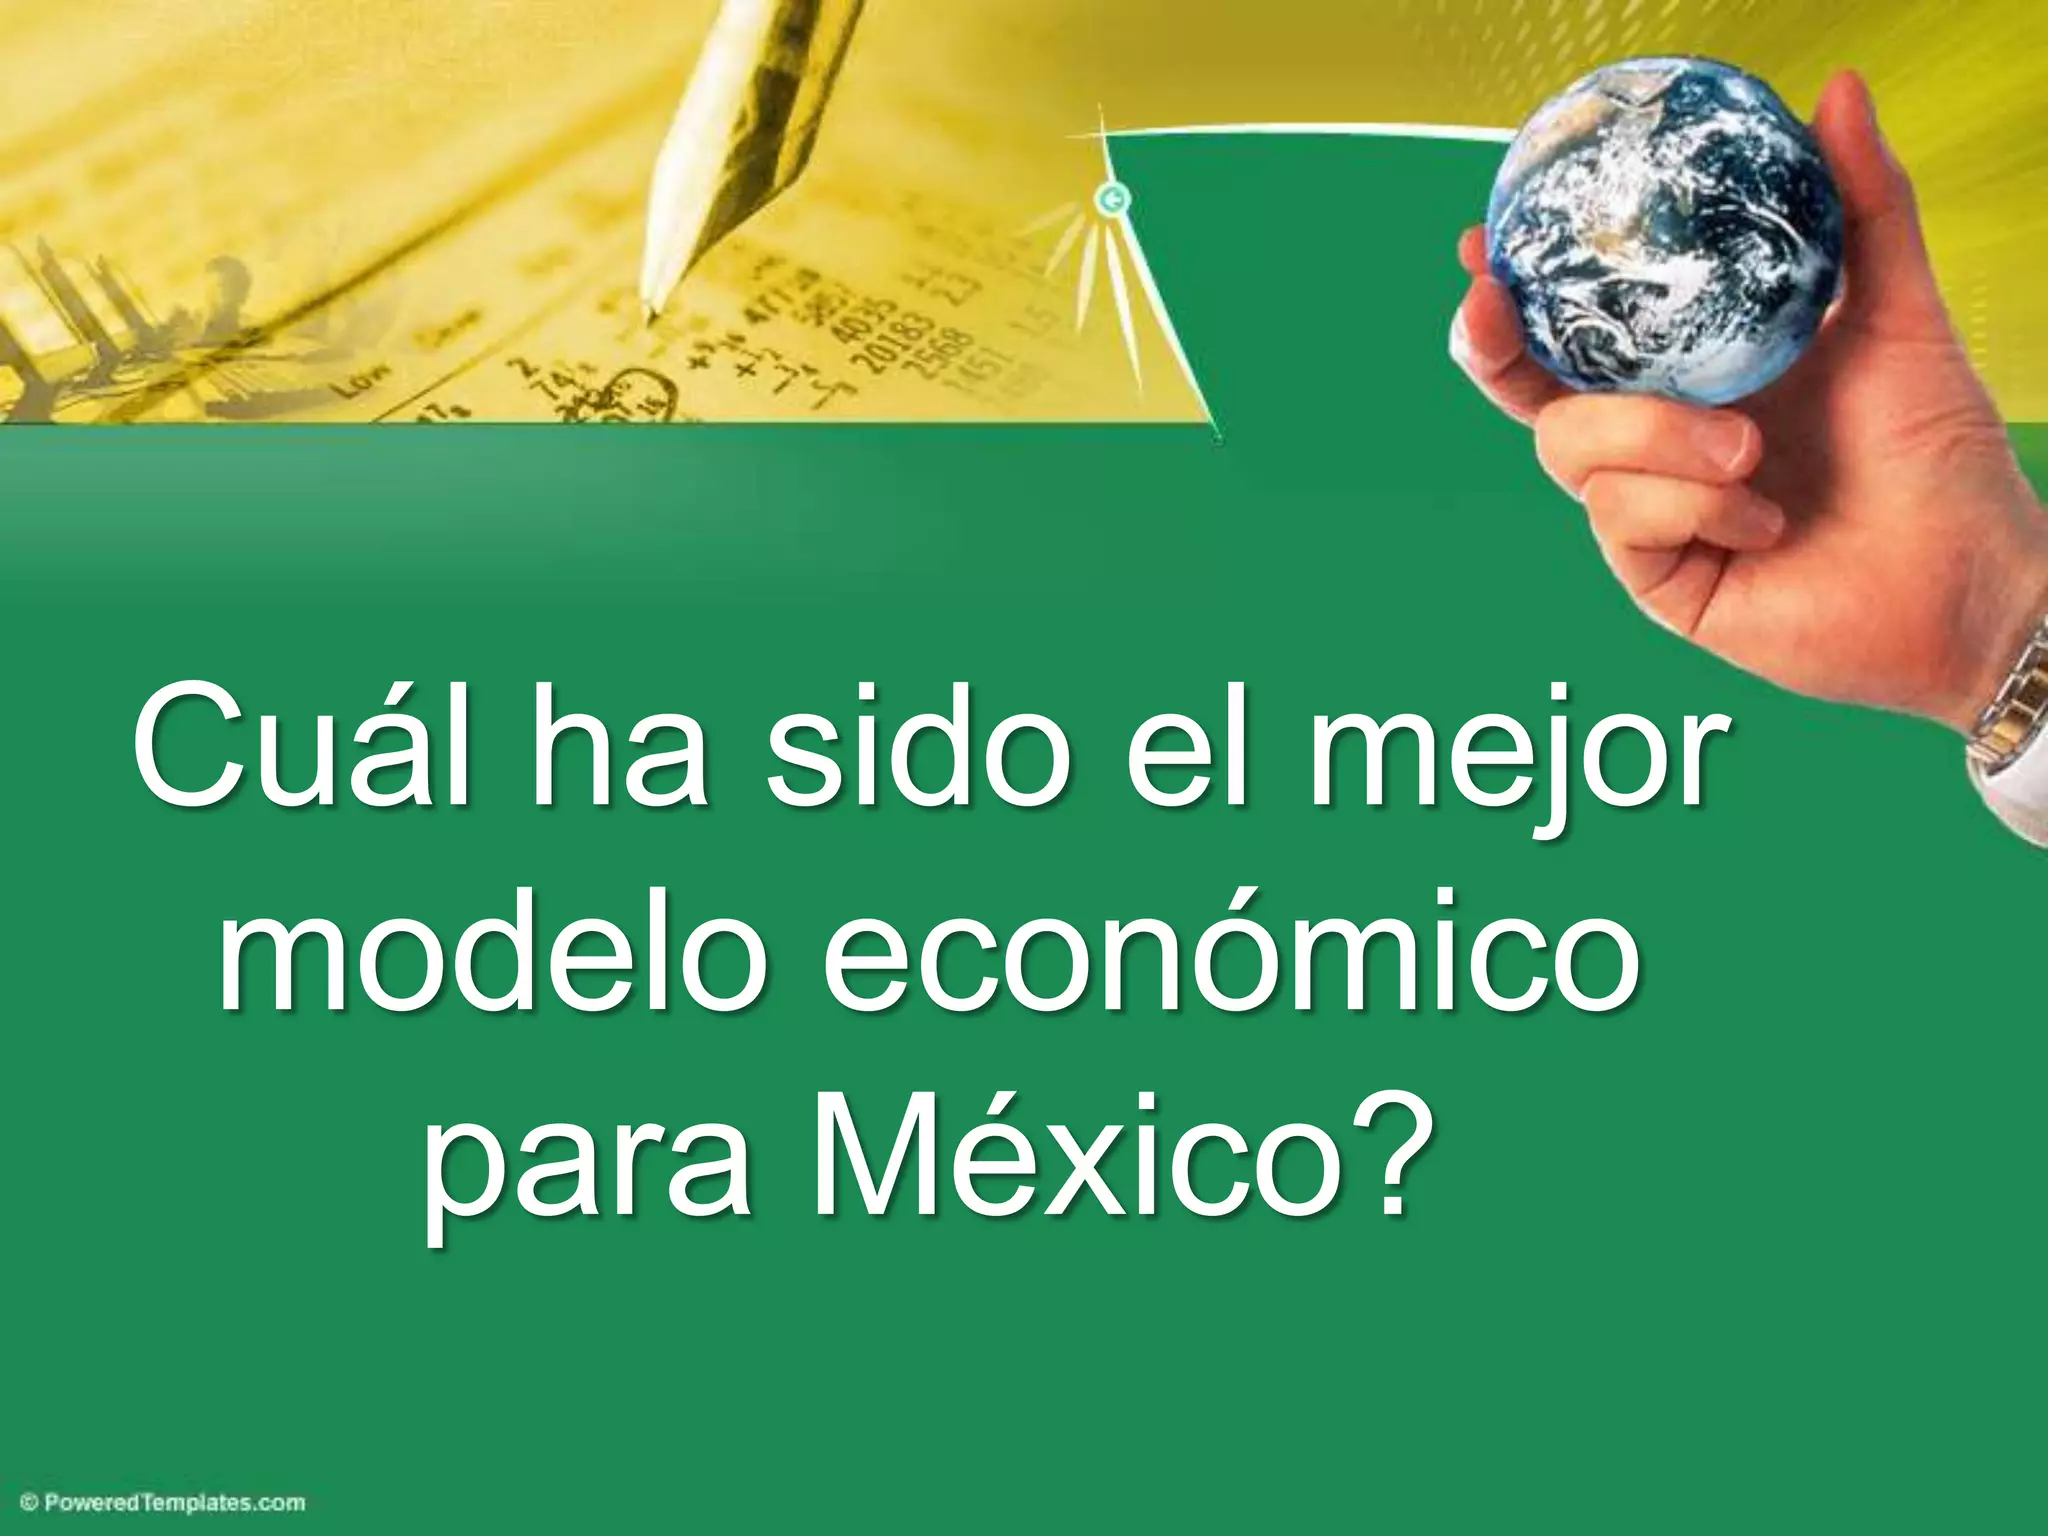 Modelos Económicos y el Estado Mexicano